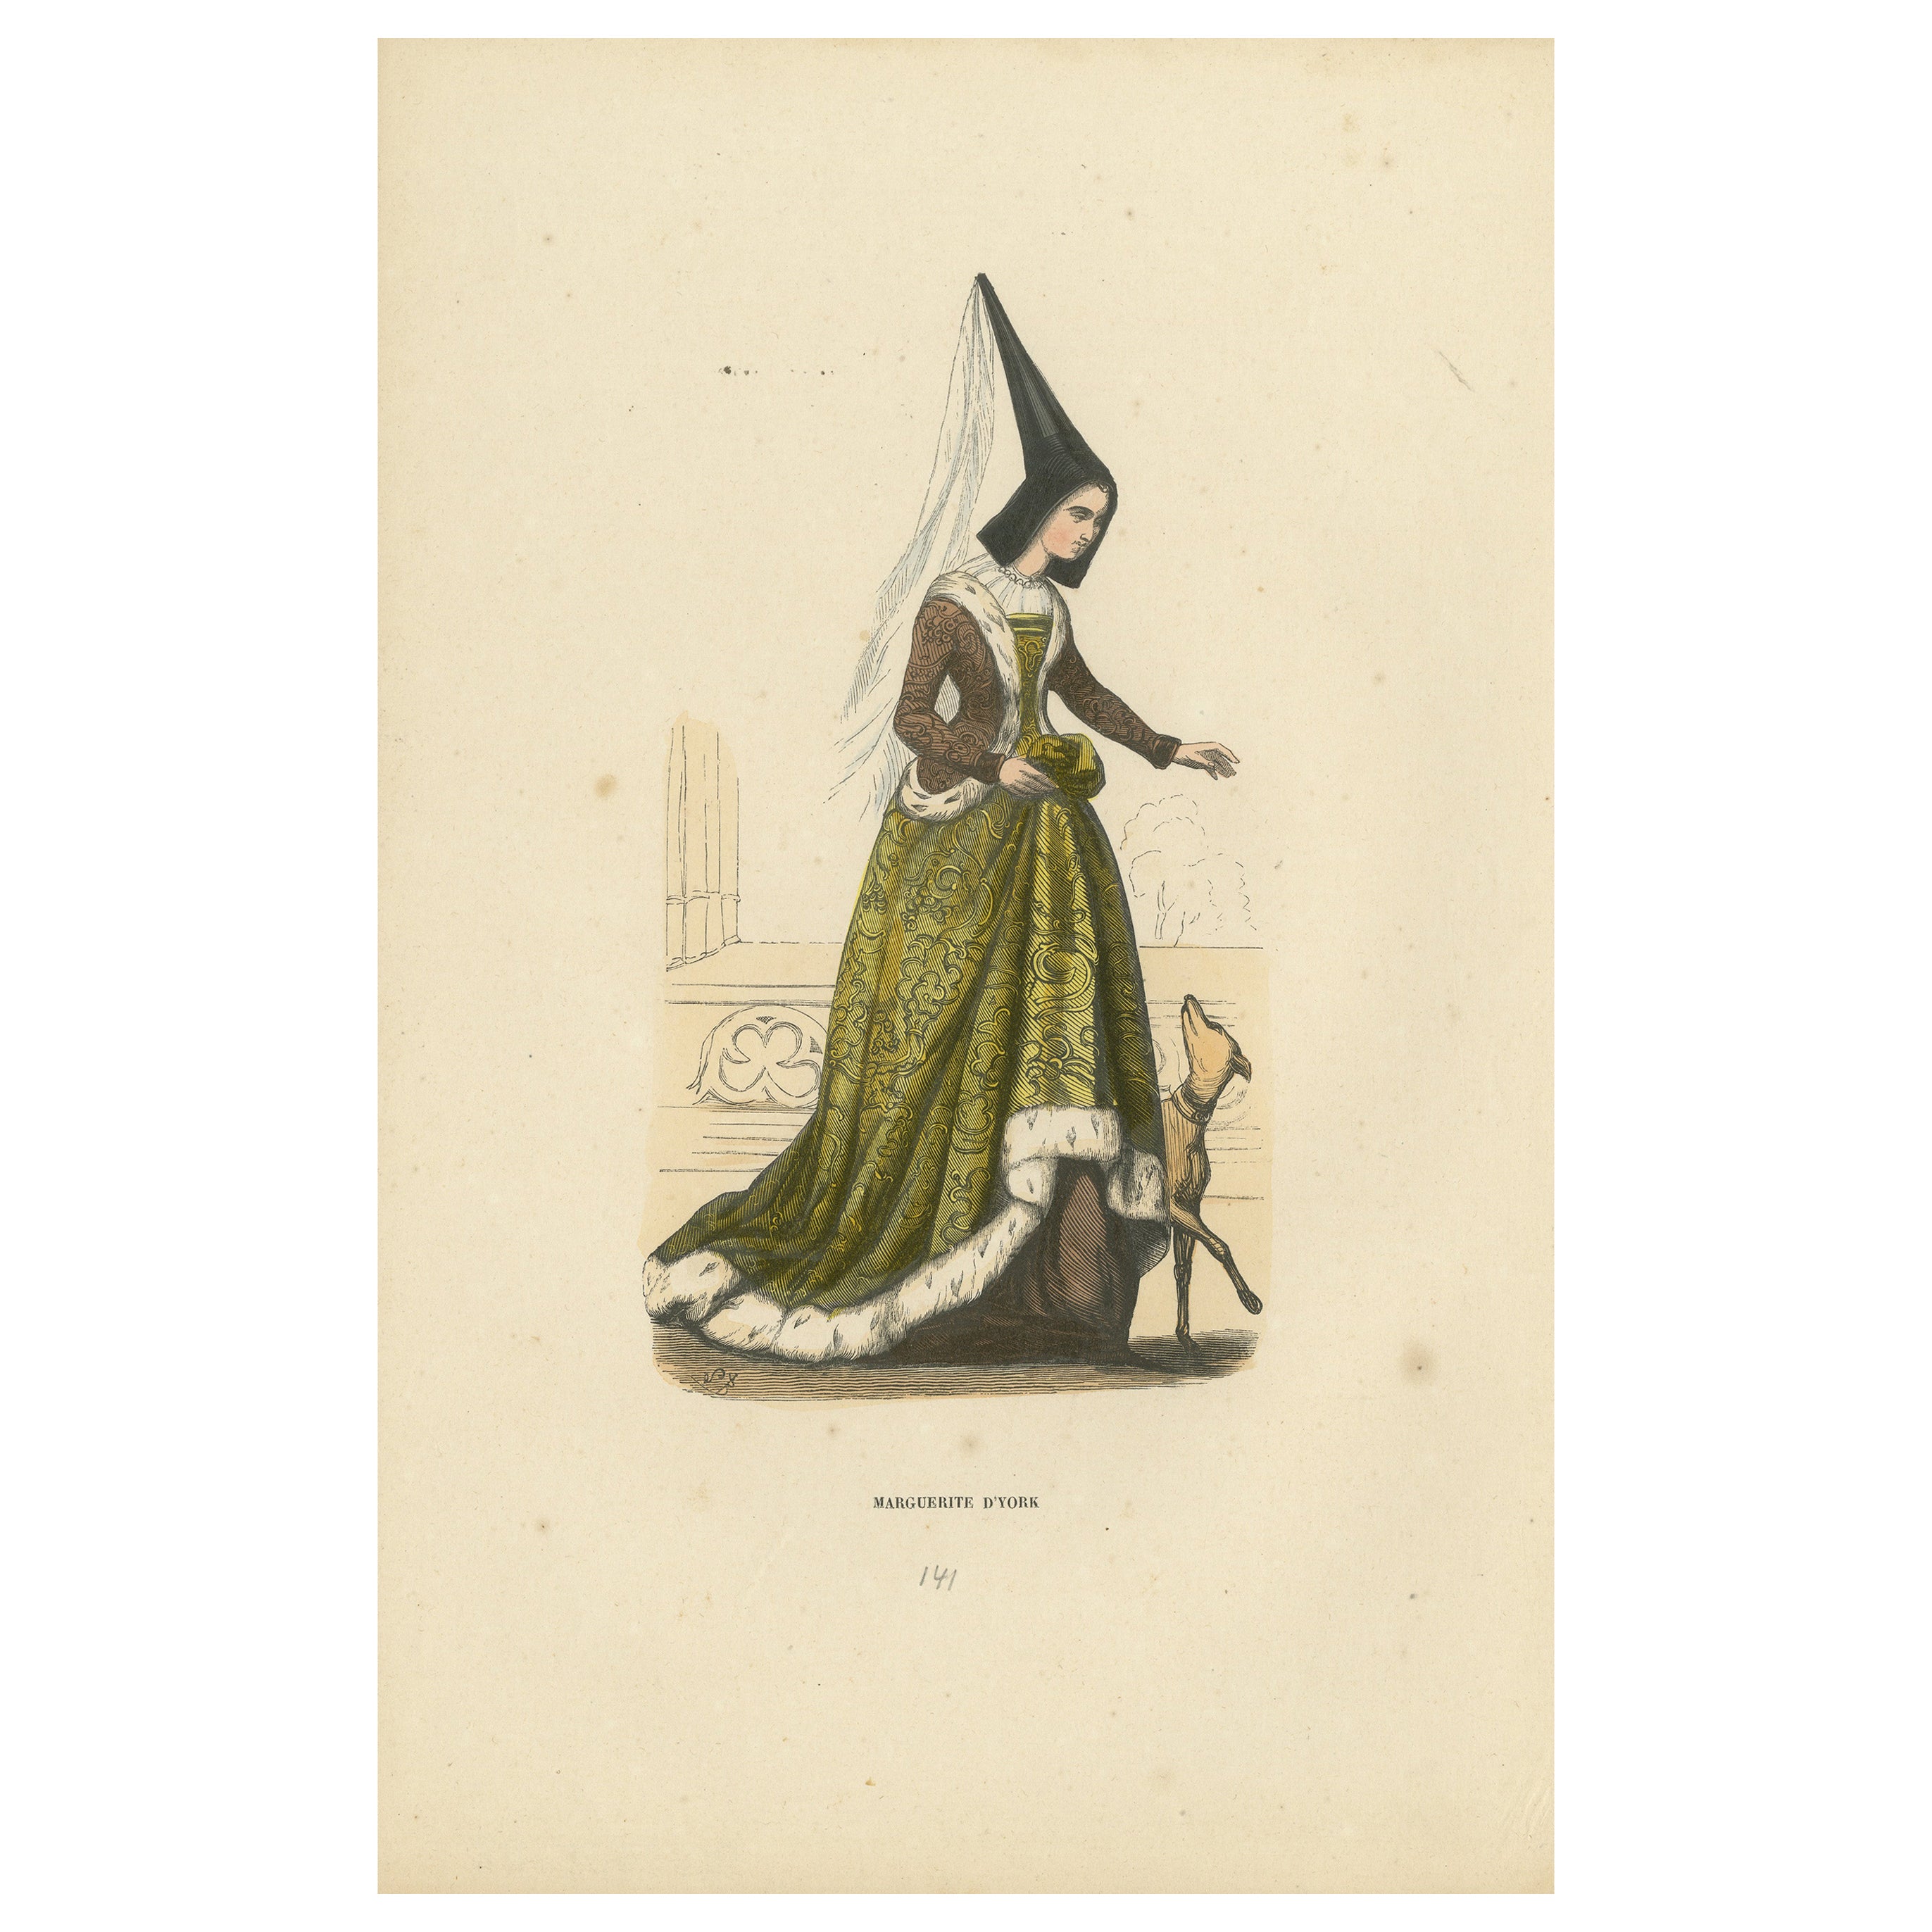 L'Elegance du passé : Marguerite d'York dans le "Costume du Moyen Âge", 1847